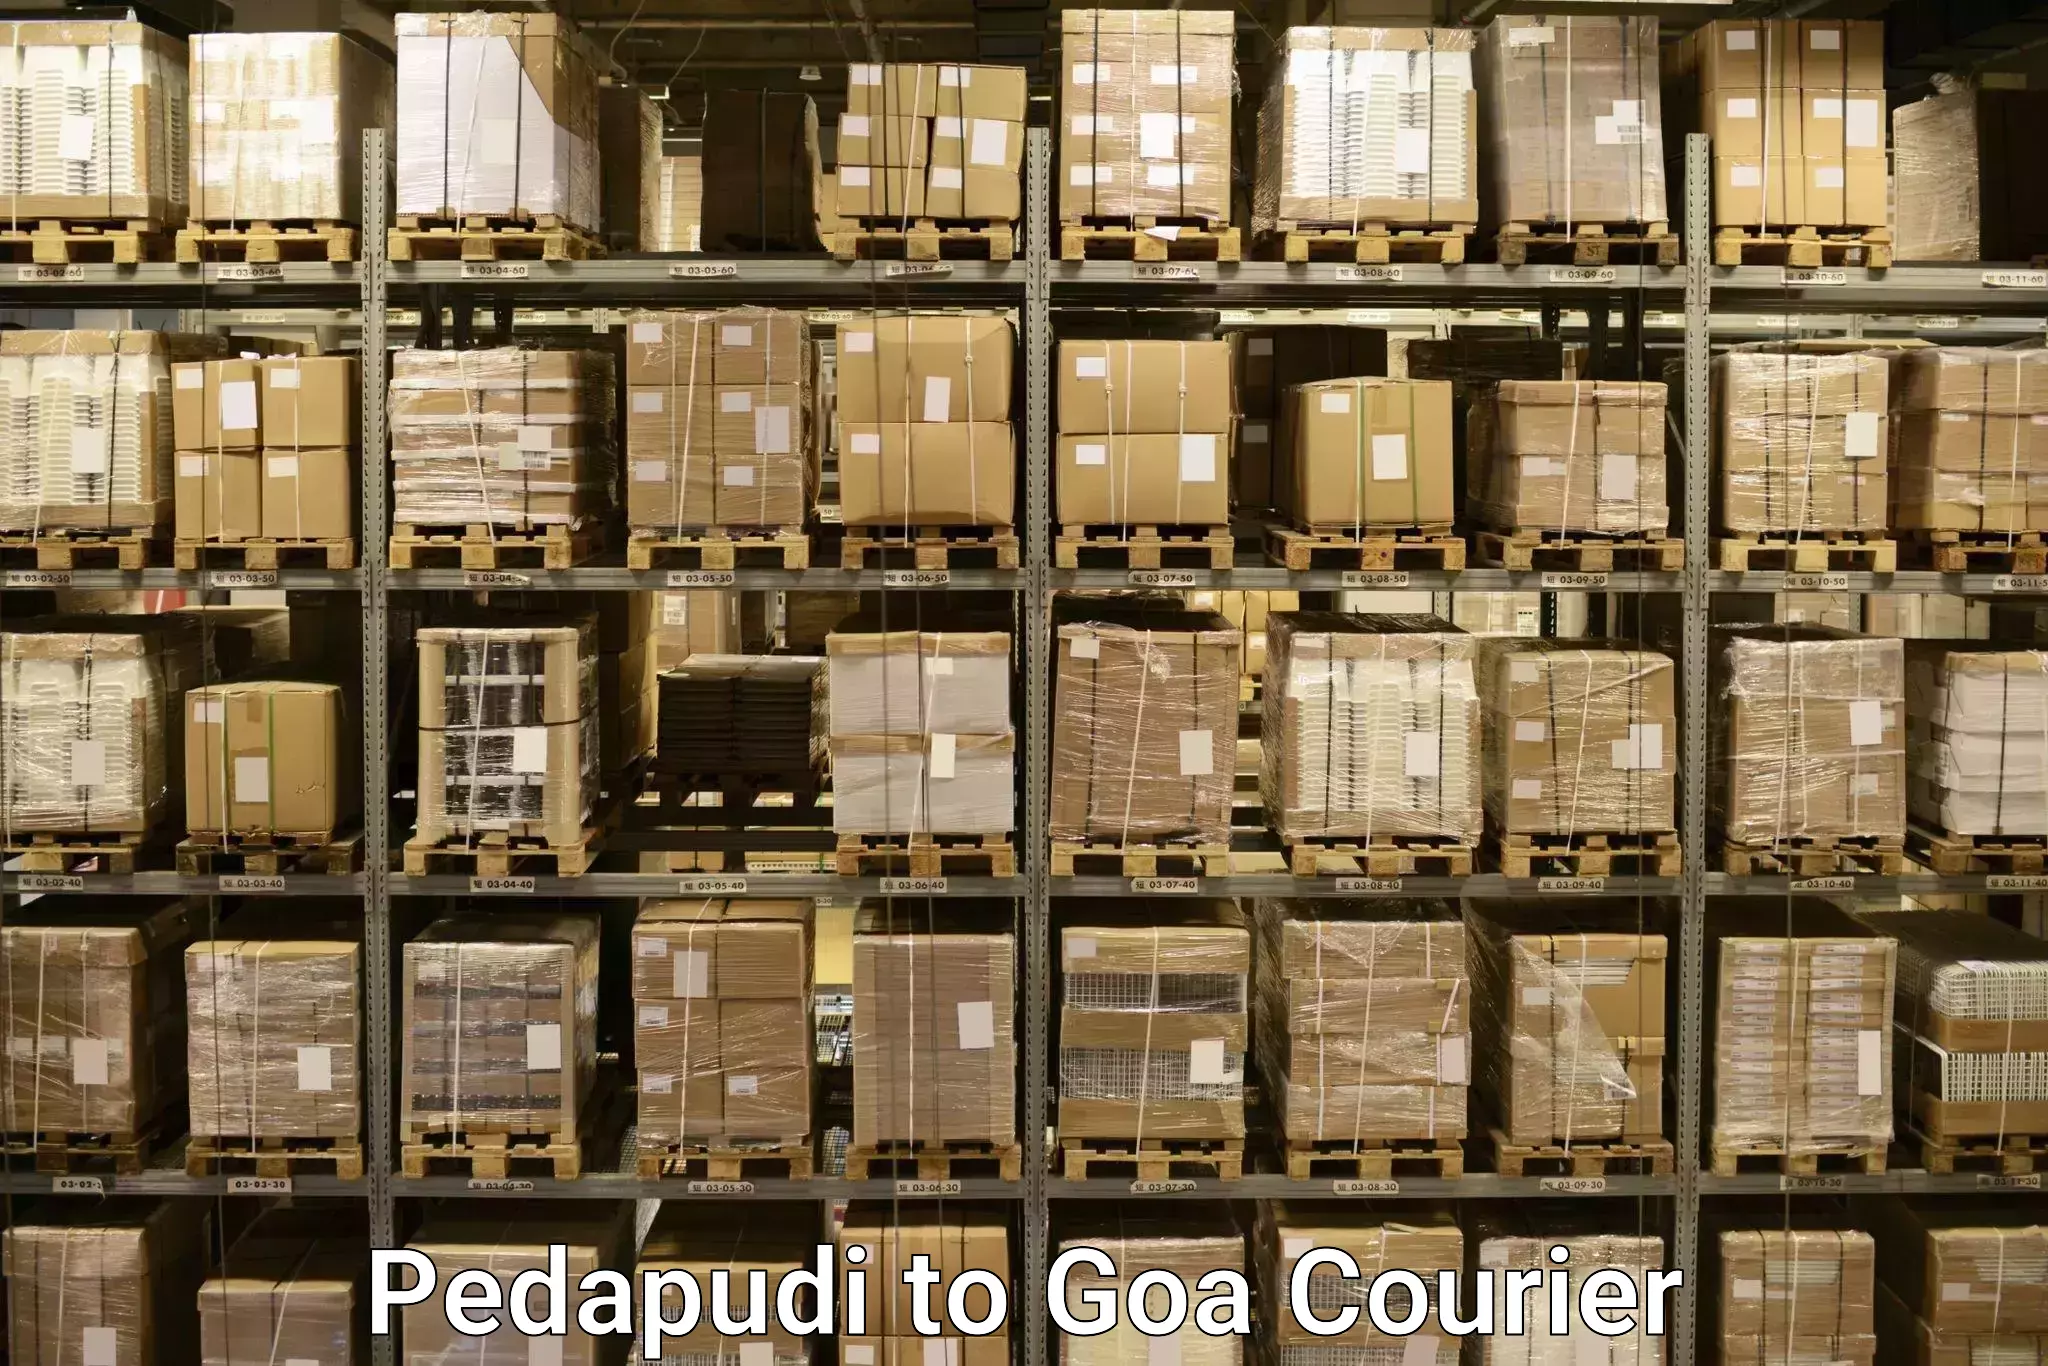 Baggage relocation service Pedapudi to Goa